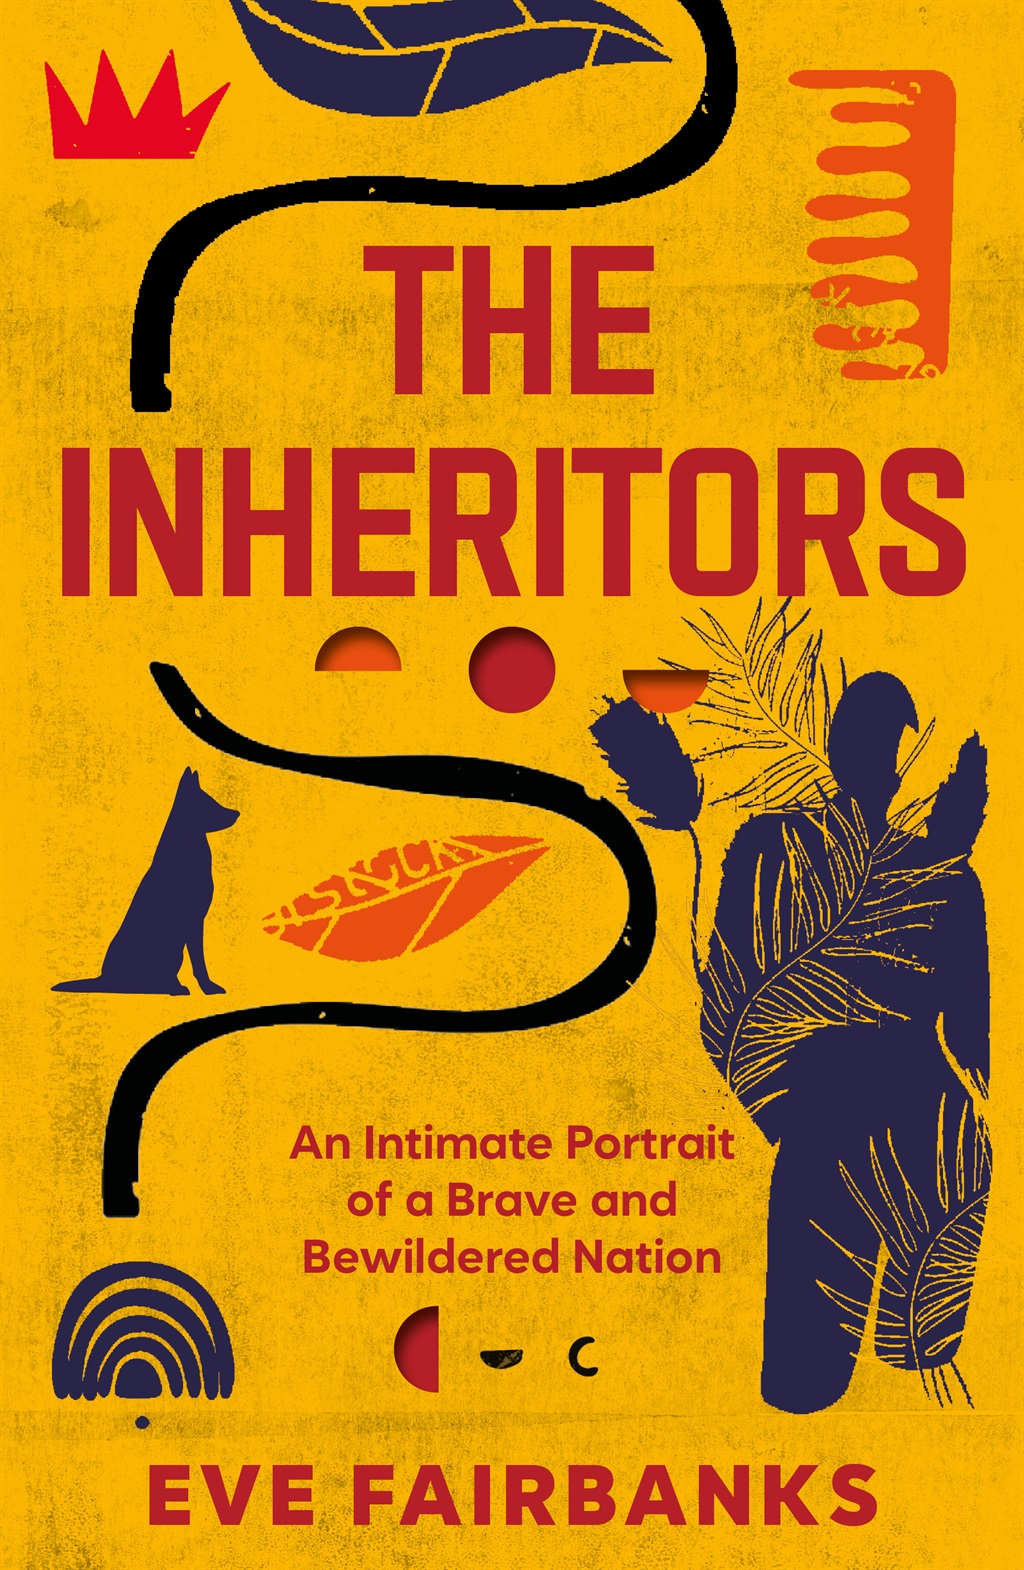 The Inheritors 